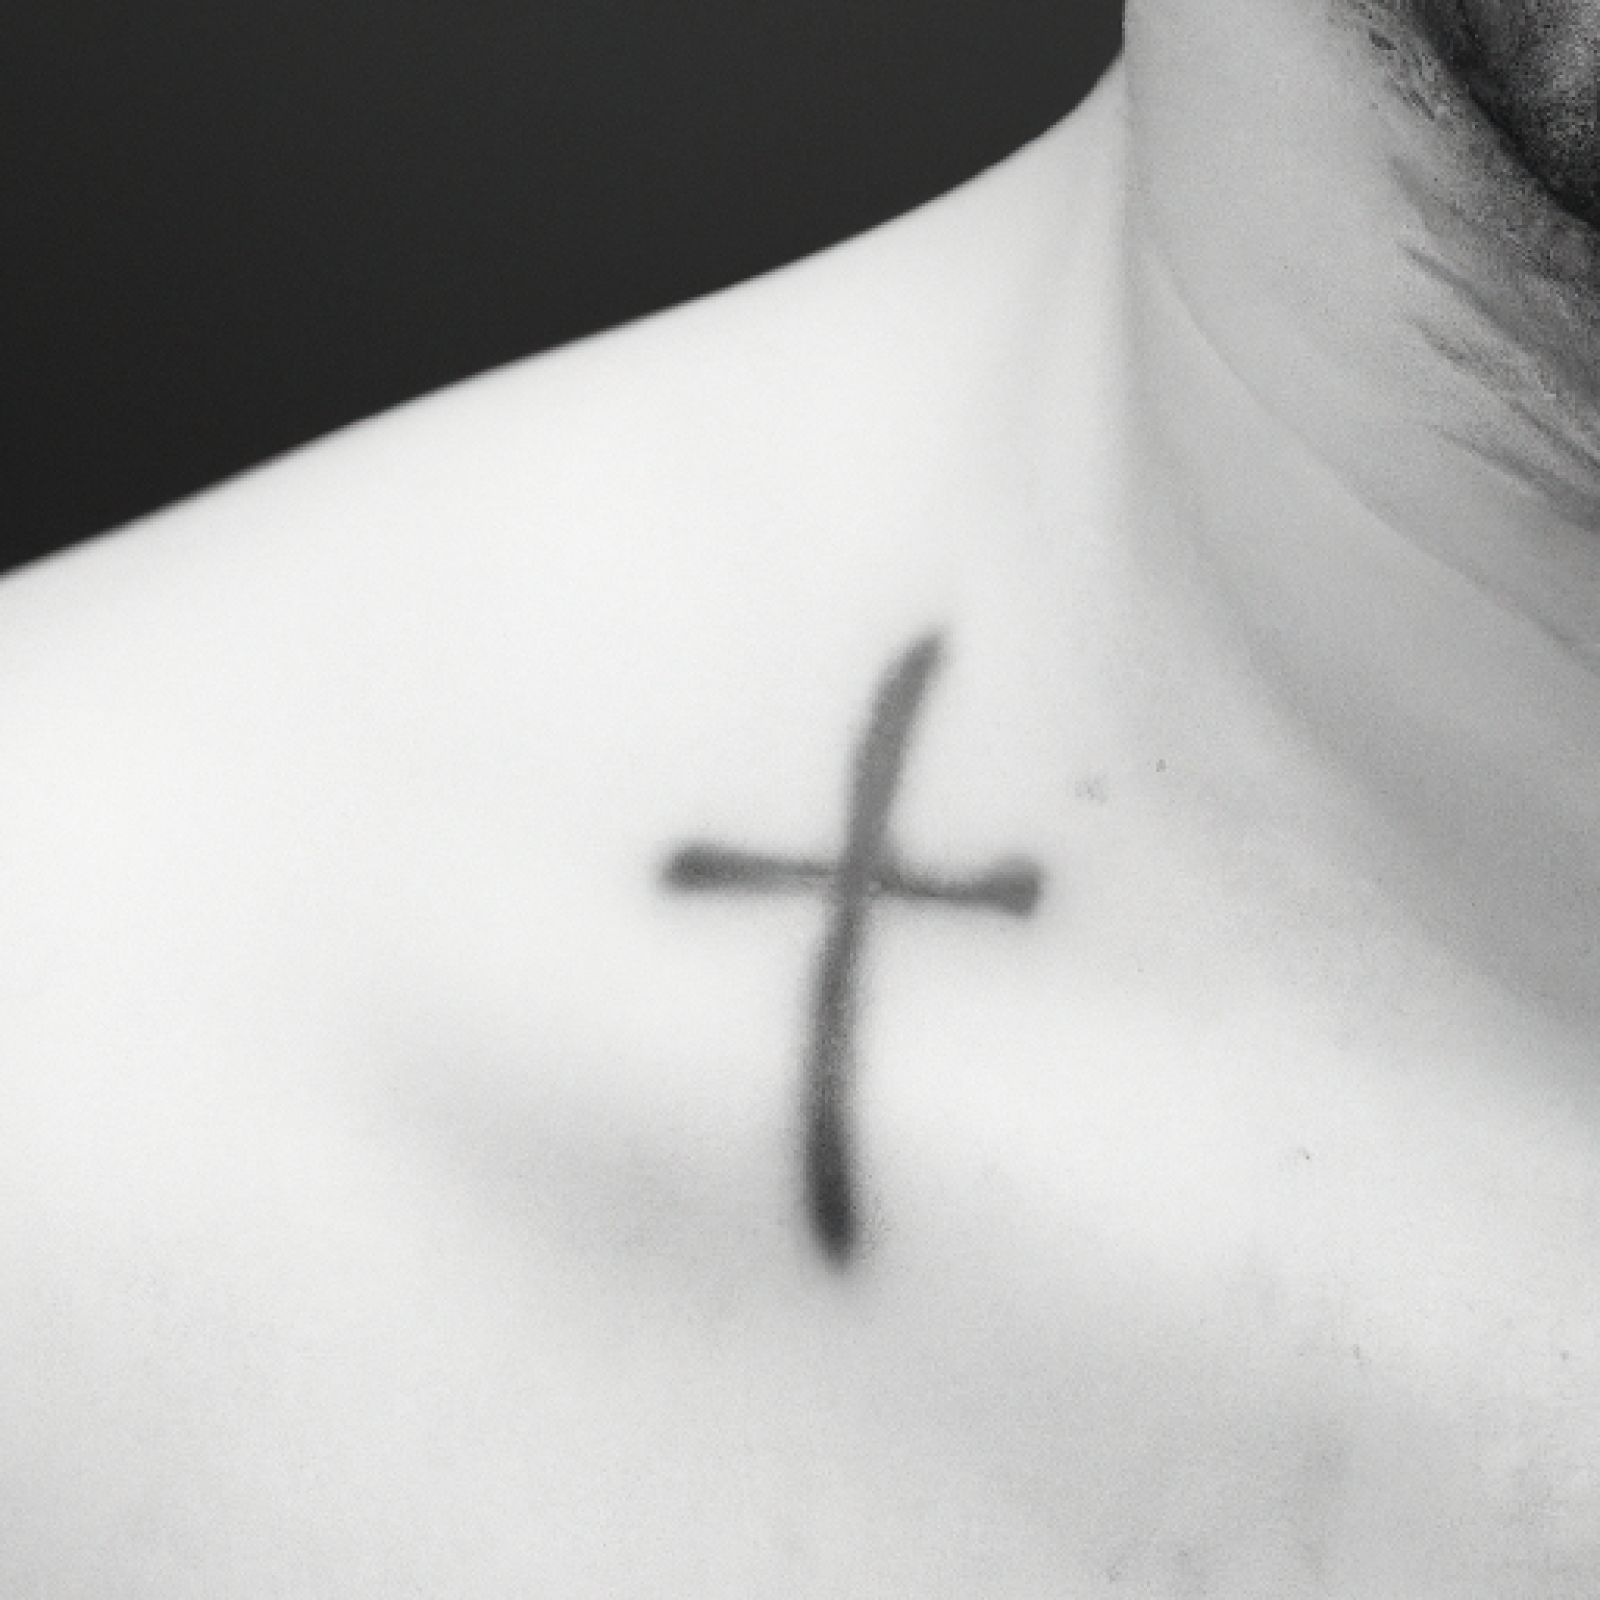 Cross tattoo on chest for men